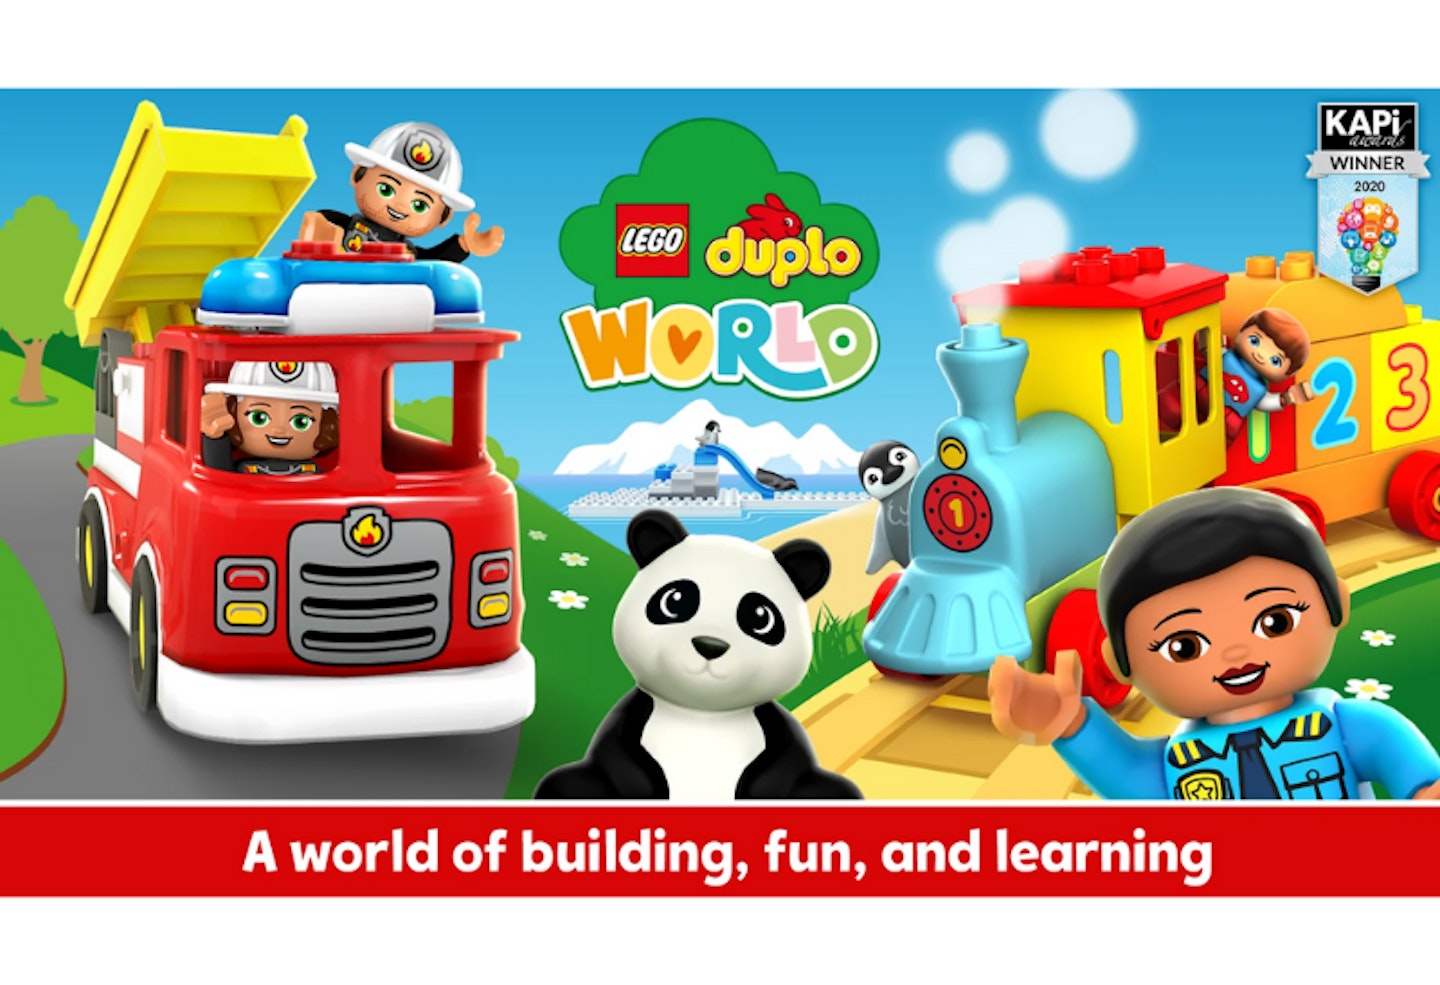 Lego Duplo ® World Preschool Learning Games